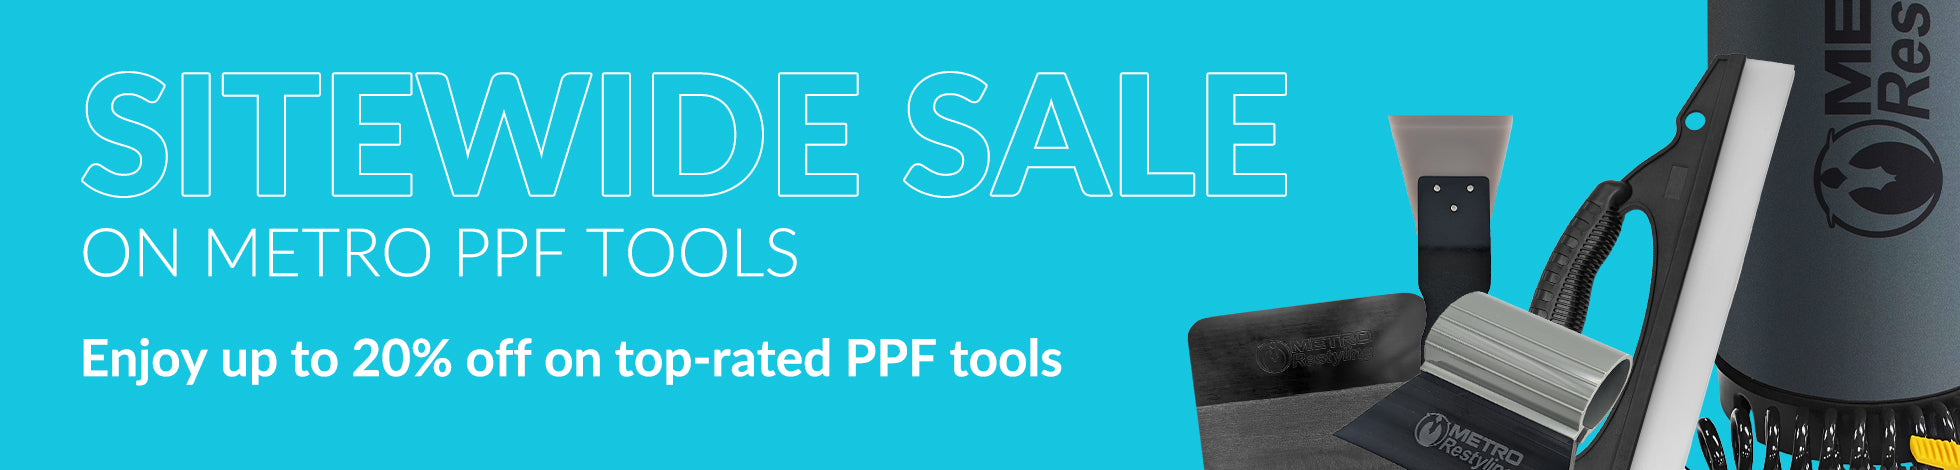 Metro PPF Tools Sale